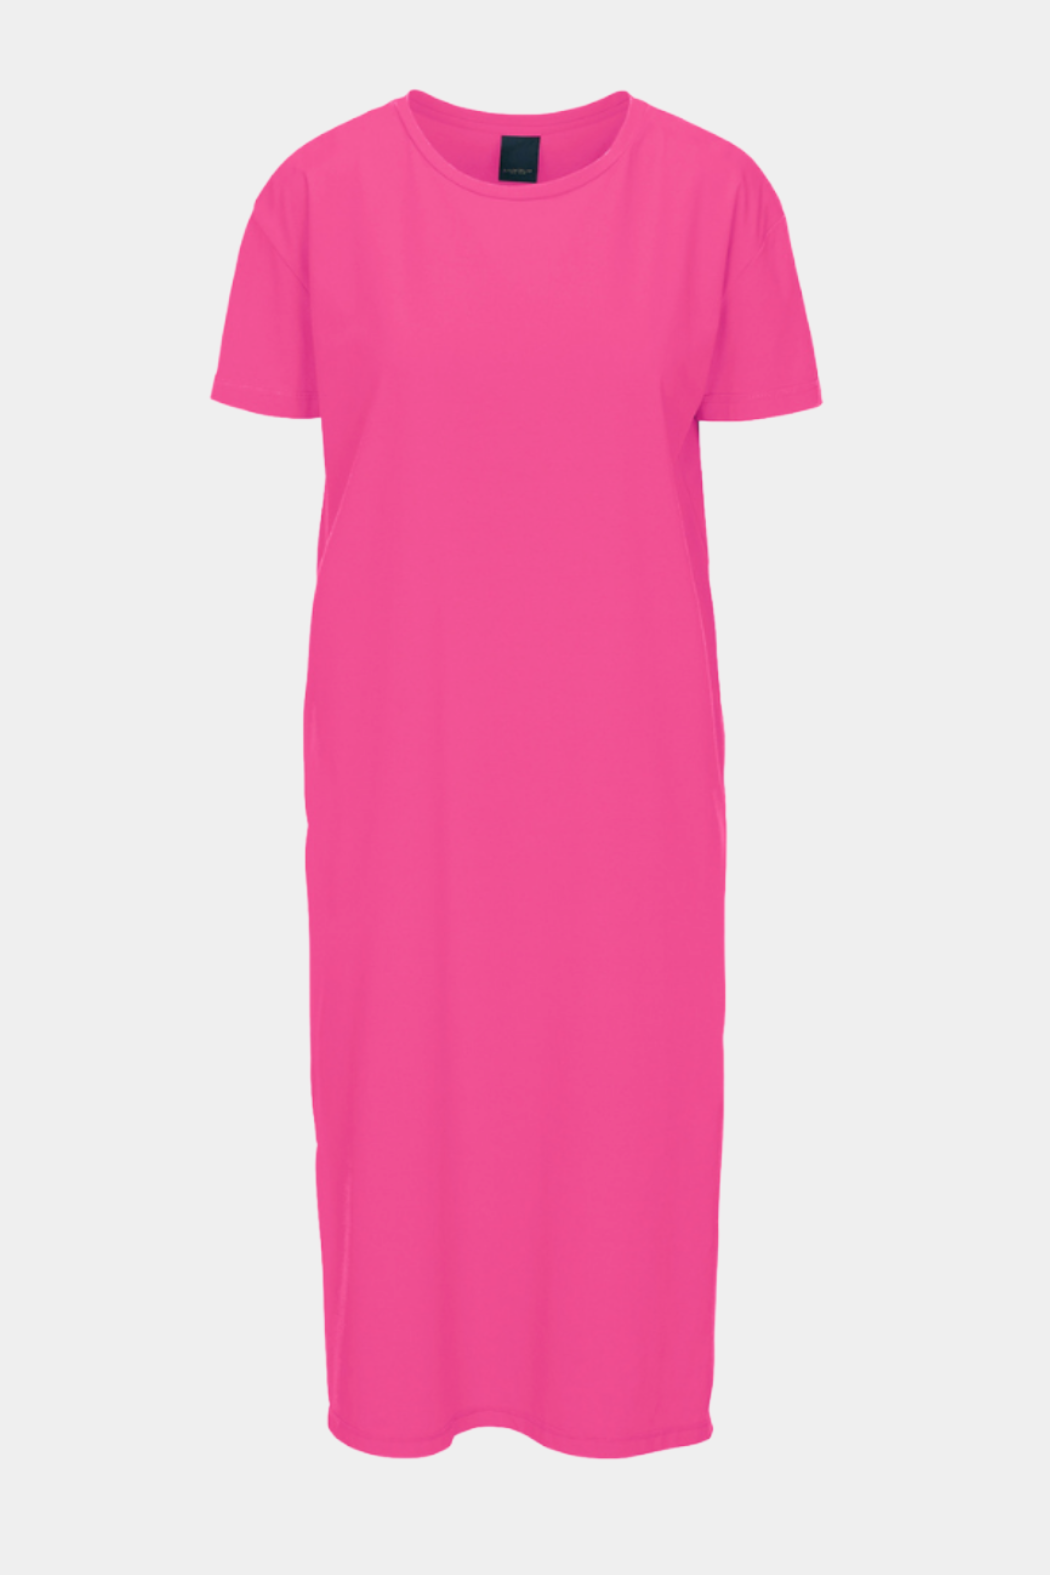 Luxzuz - Aima dress, fandango pink Butik